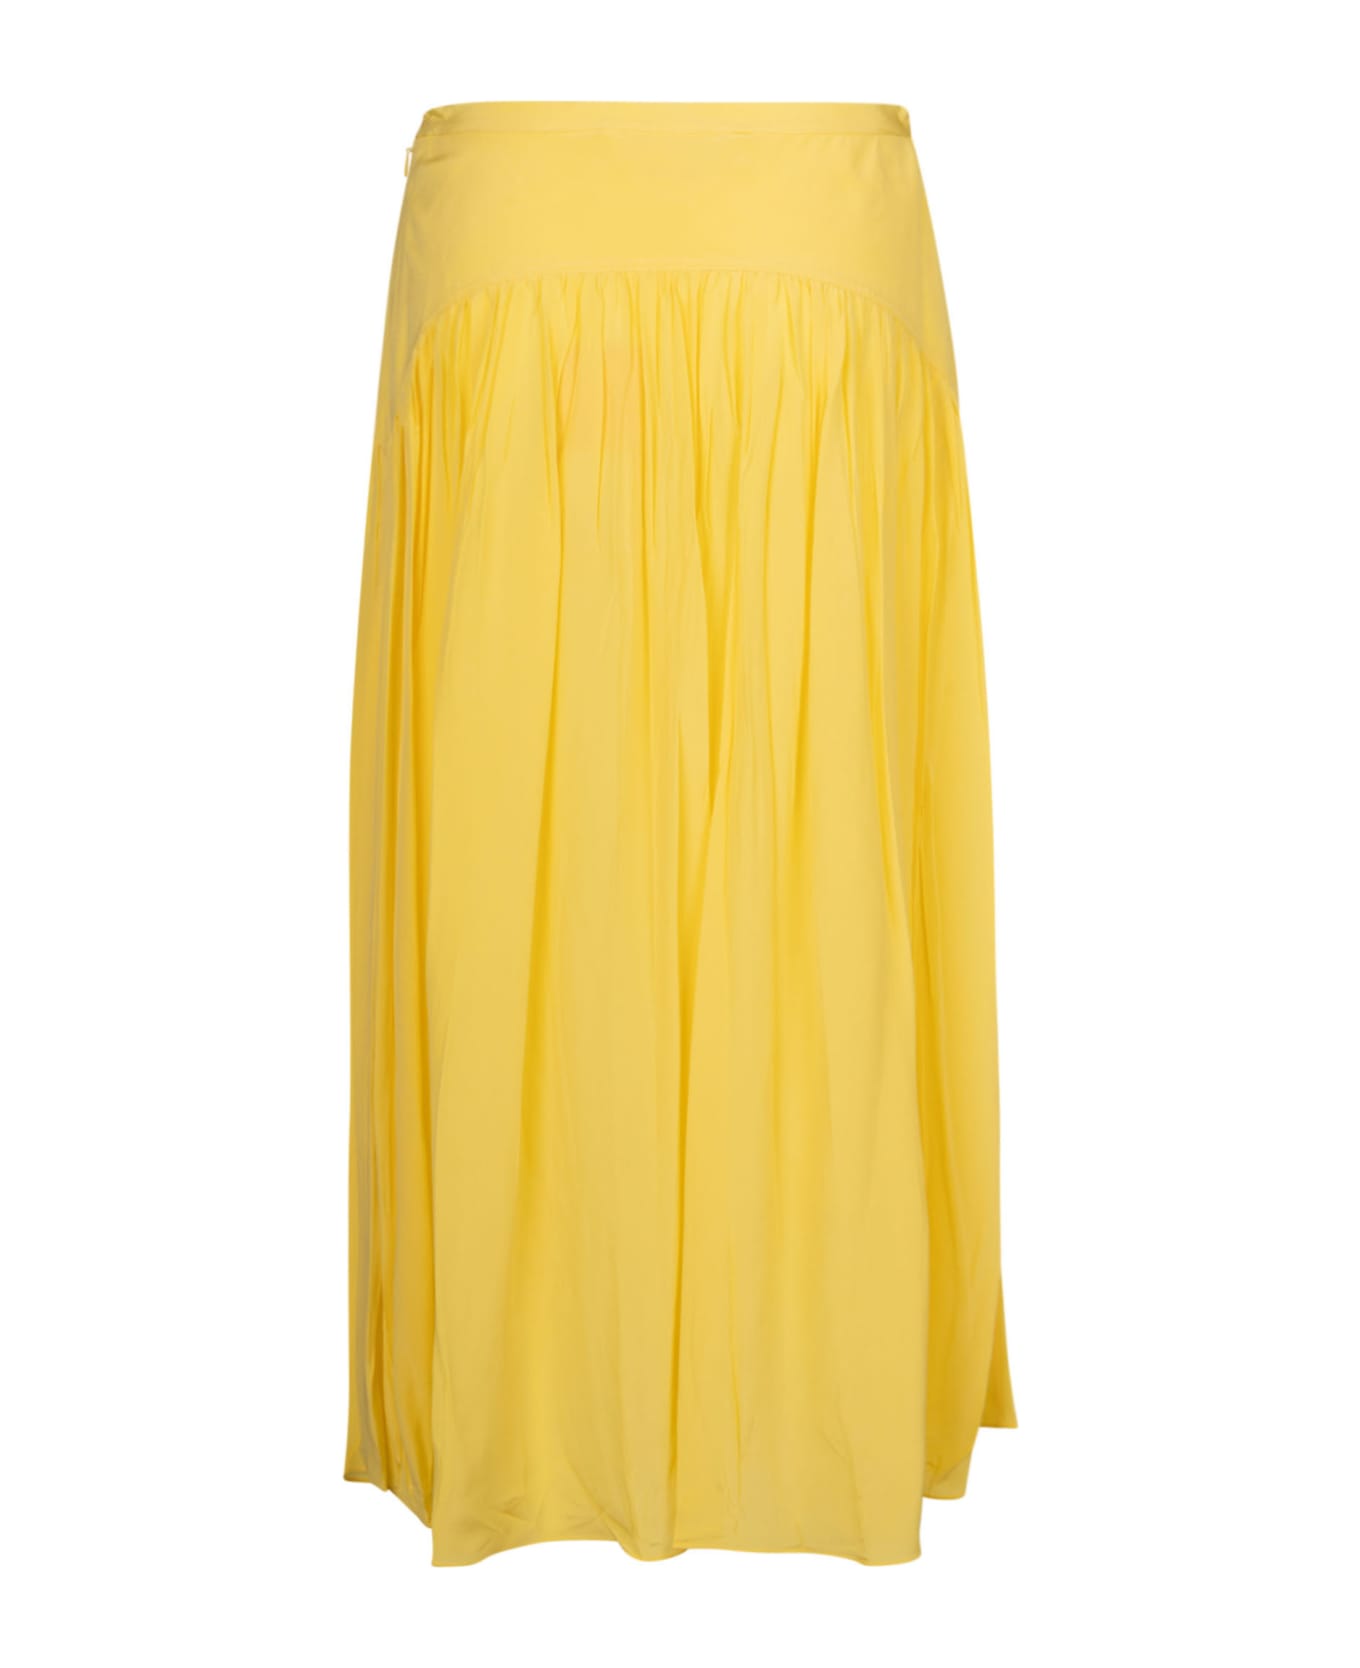 Marni Pleated Skirt - Lemon 